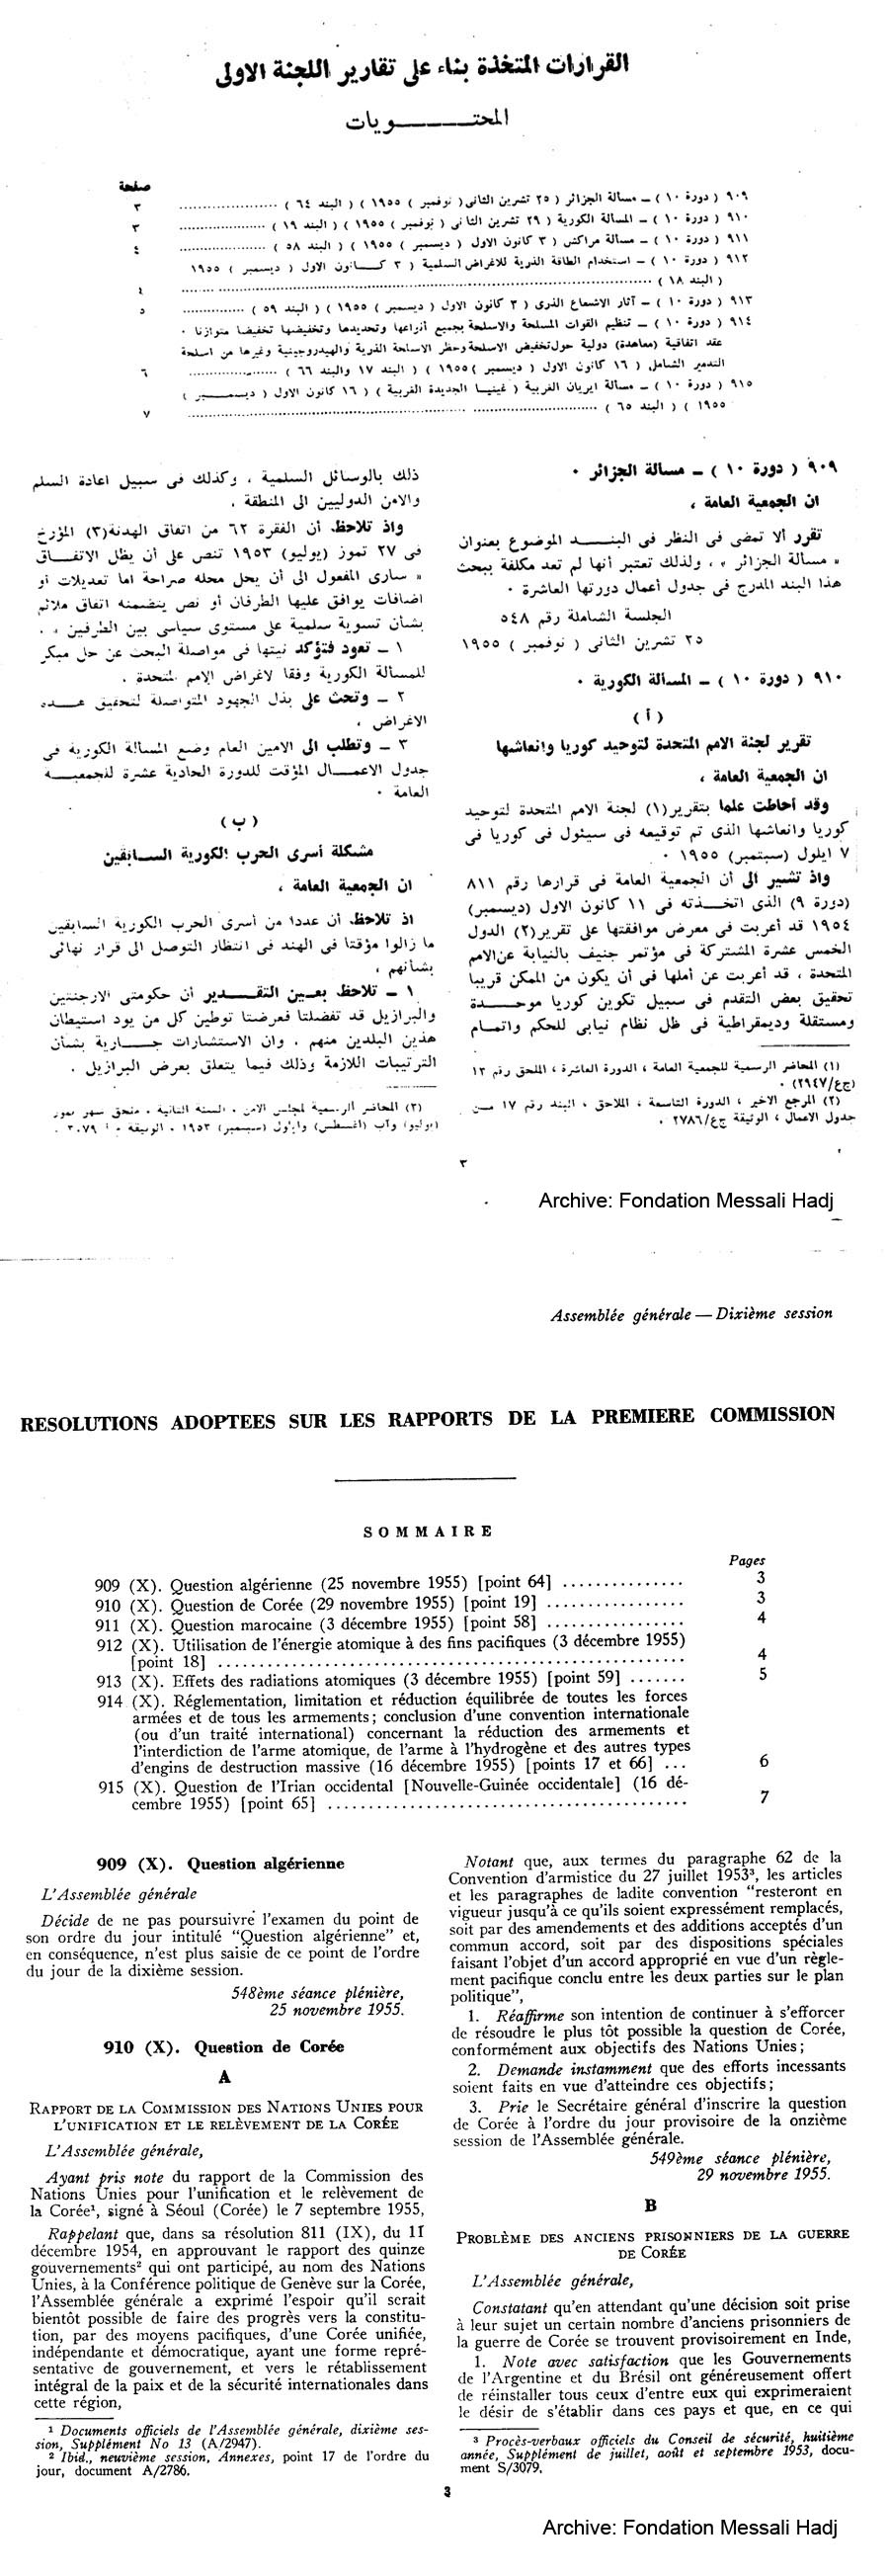 Statut Algerie 1947